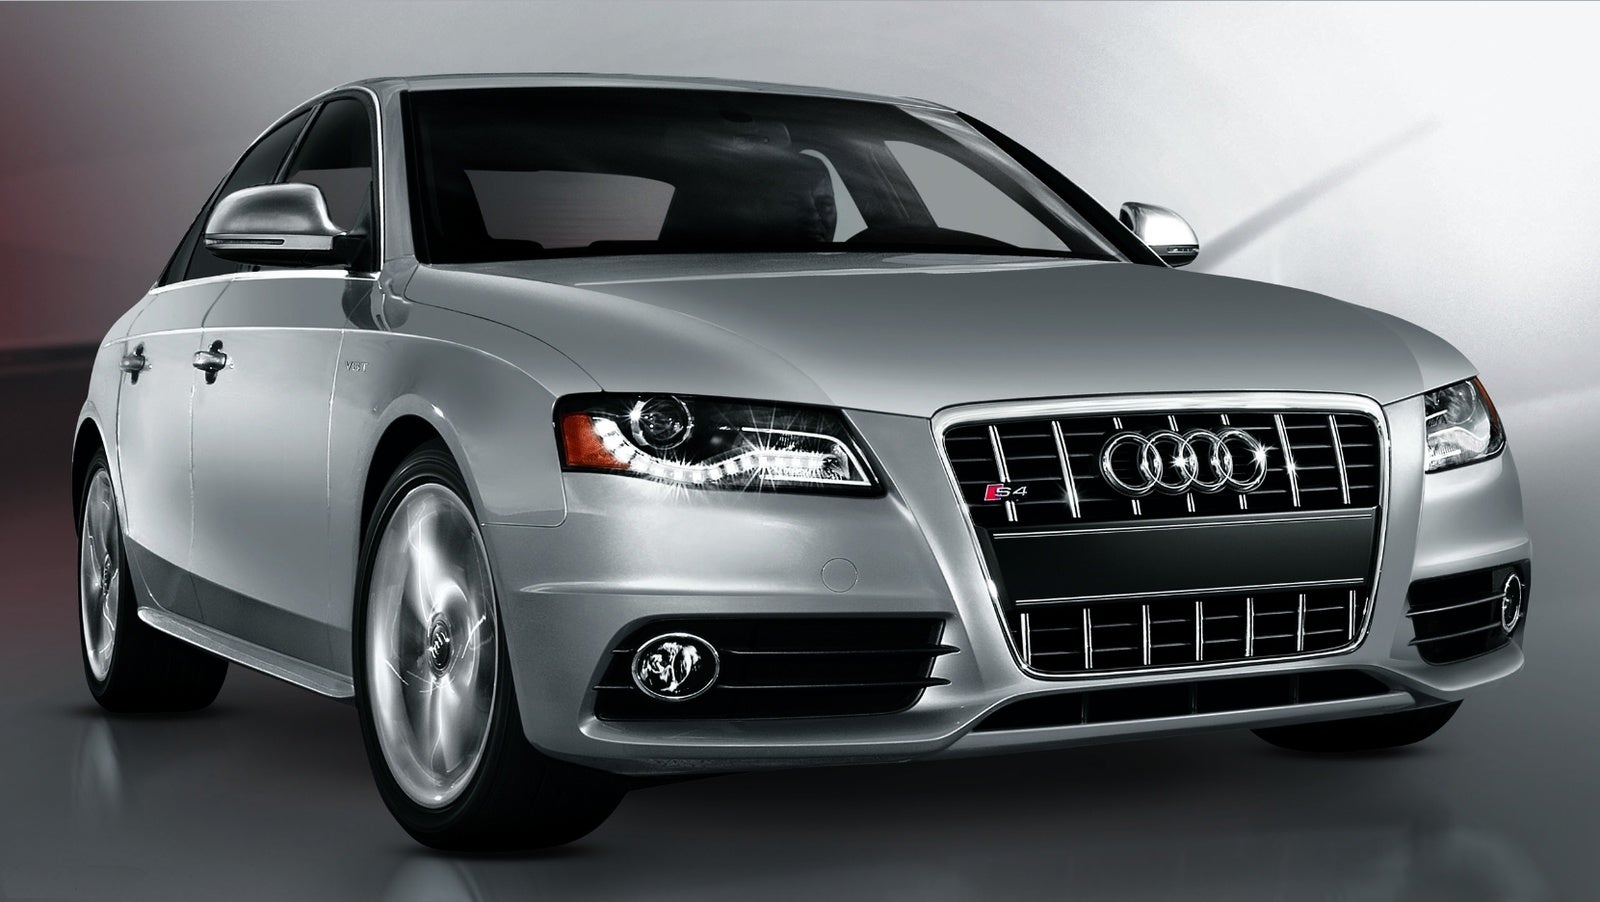 2010 Audi S4 Avant For Sale